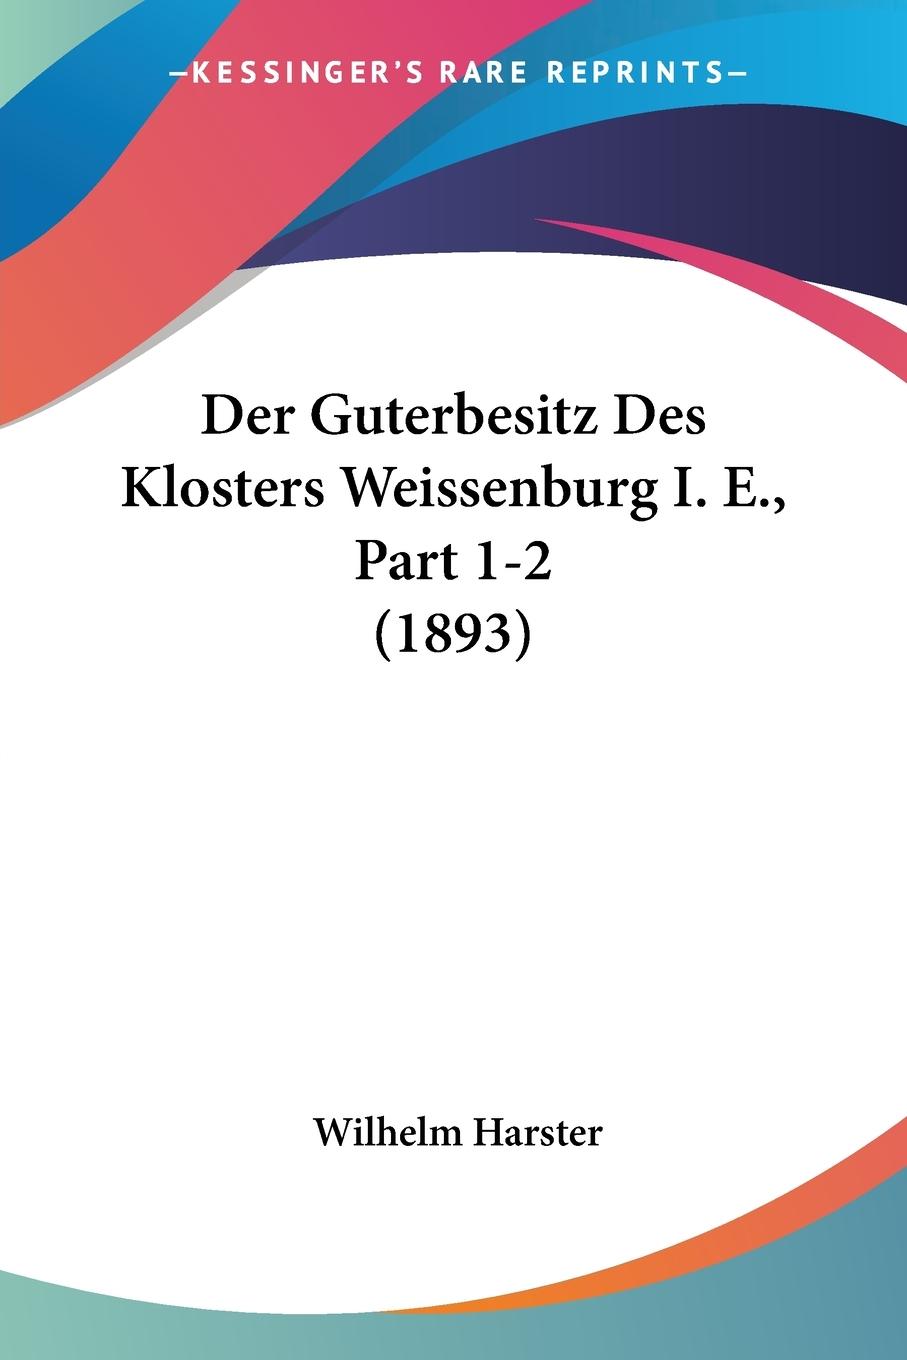 Der Guterbesitz Des Klosters Weissenburg I. E., Part 1-2 (1893) - Harster, Wilhelm